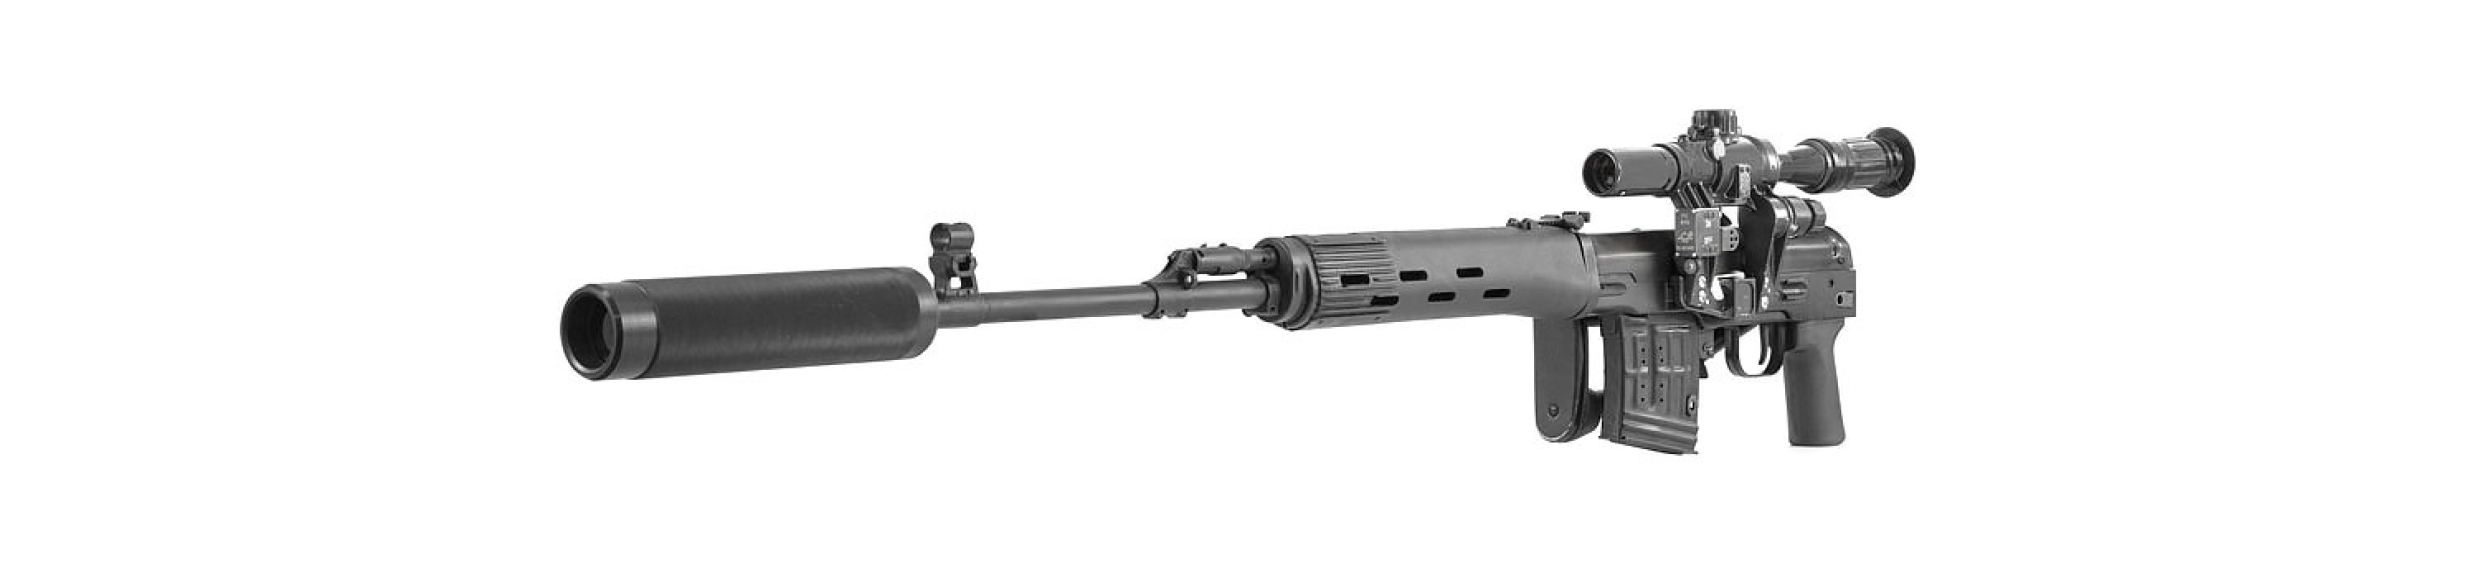 Снайперская винтовка СВД «ТИТАН» серии «STEEL» - фото 4